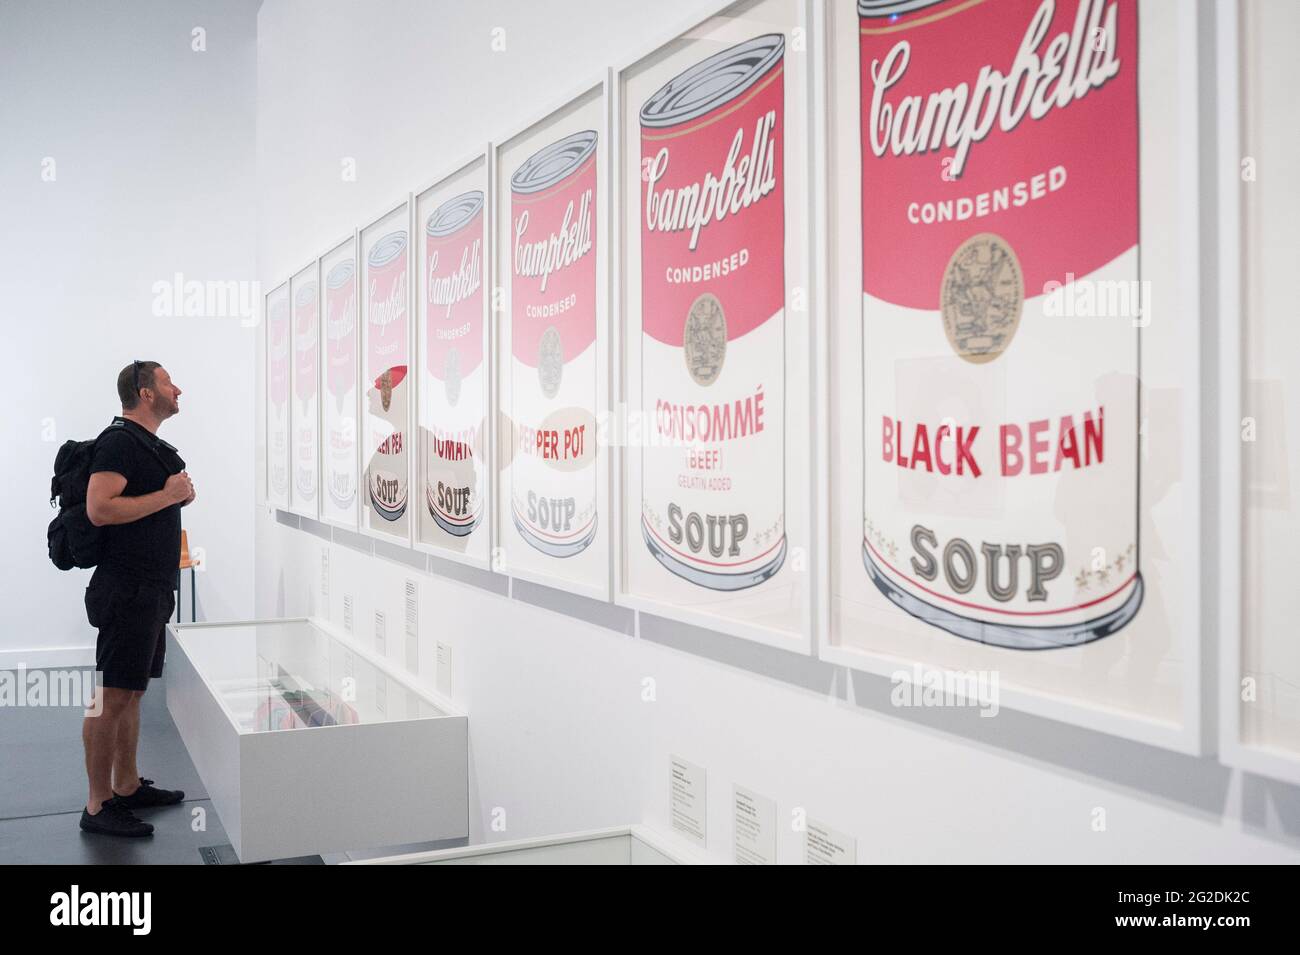 Personne debout dans un musée d'art moderne exposition Andy Warhol Pop Art à Barcelone, Espagne Banque D'Images